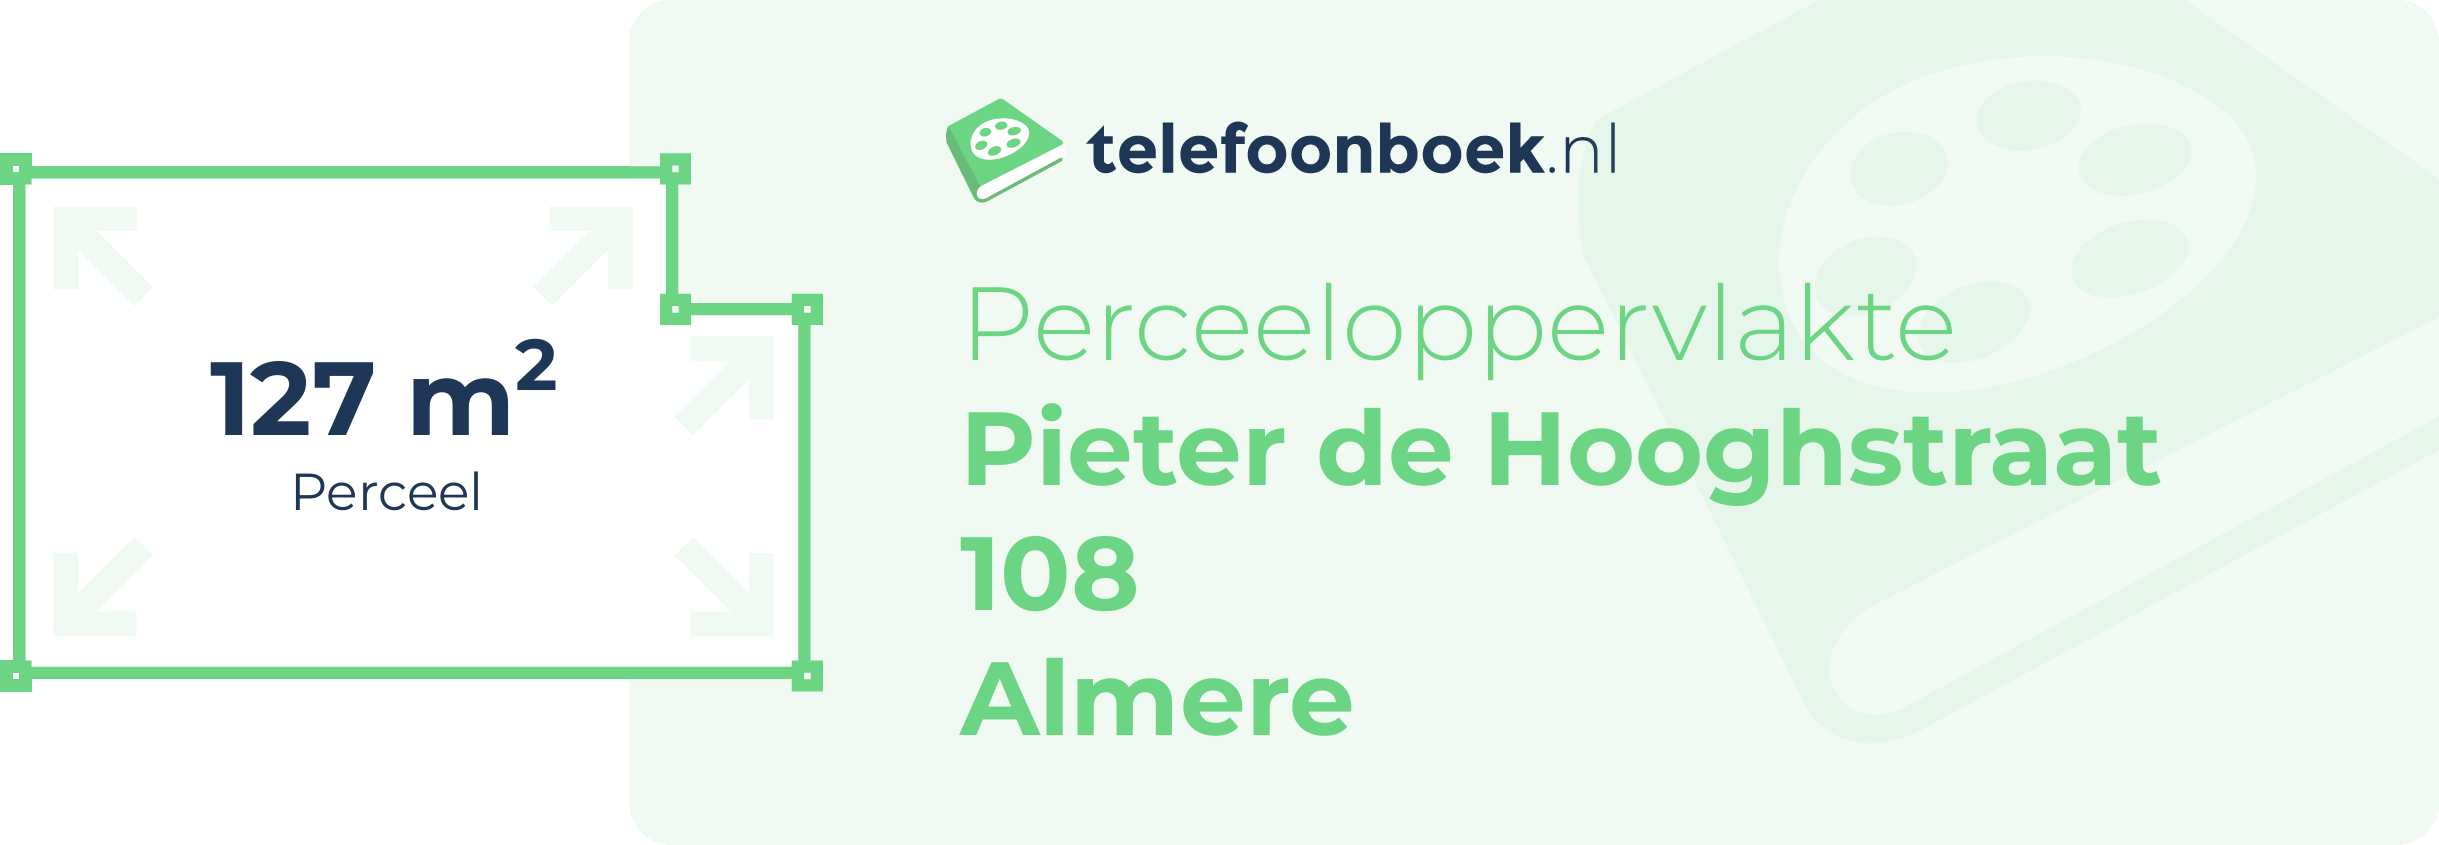 Perceeloppervlakte Pieter De Hooghstraat 108 Almere